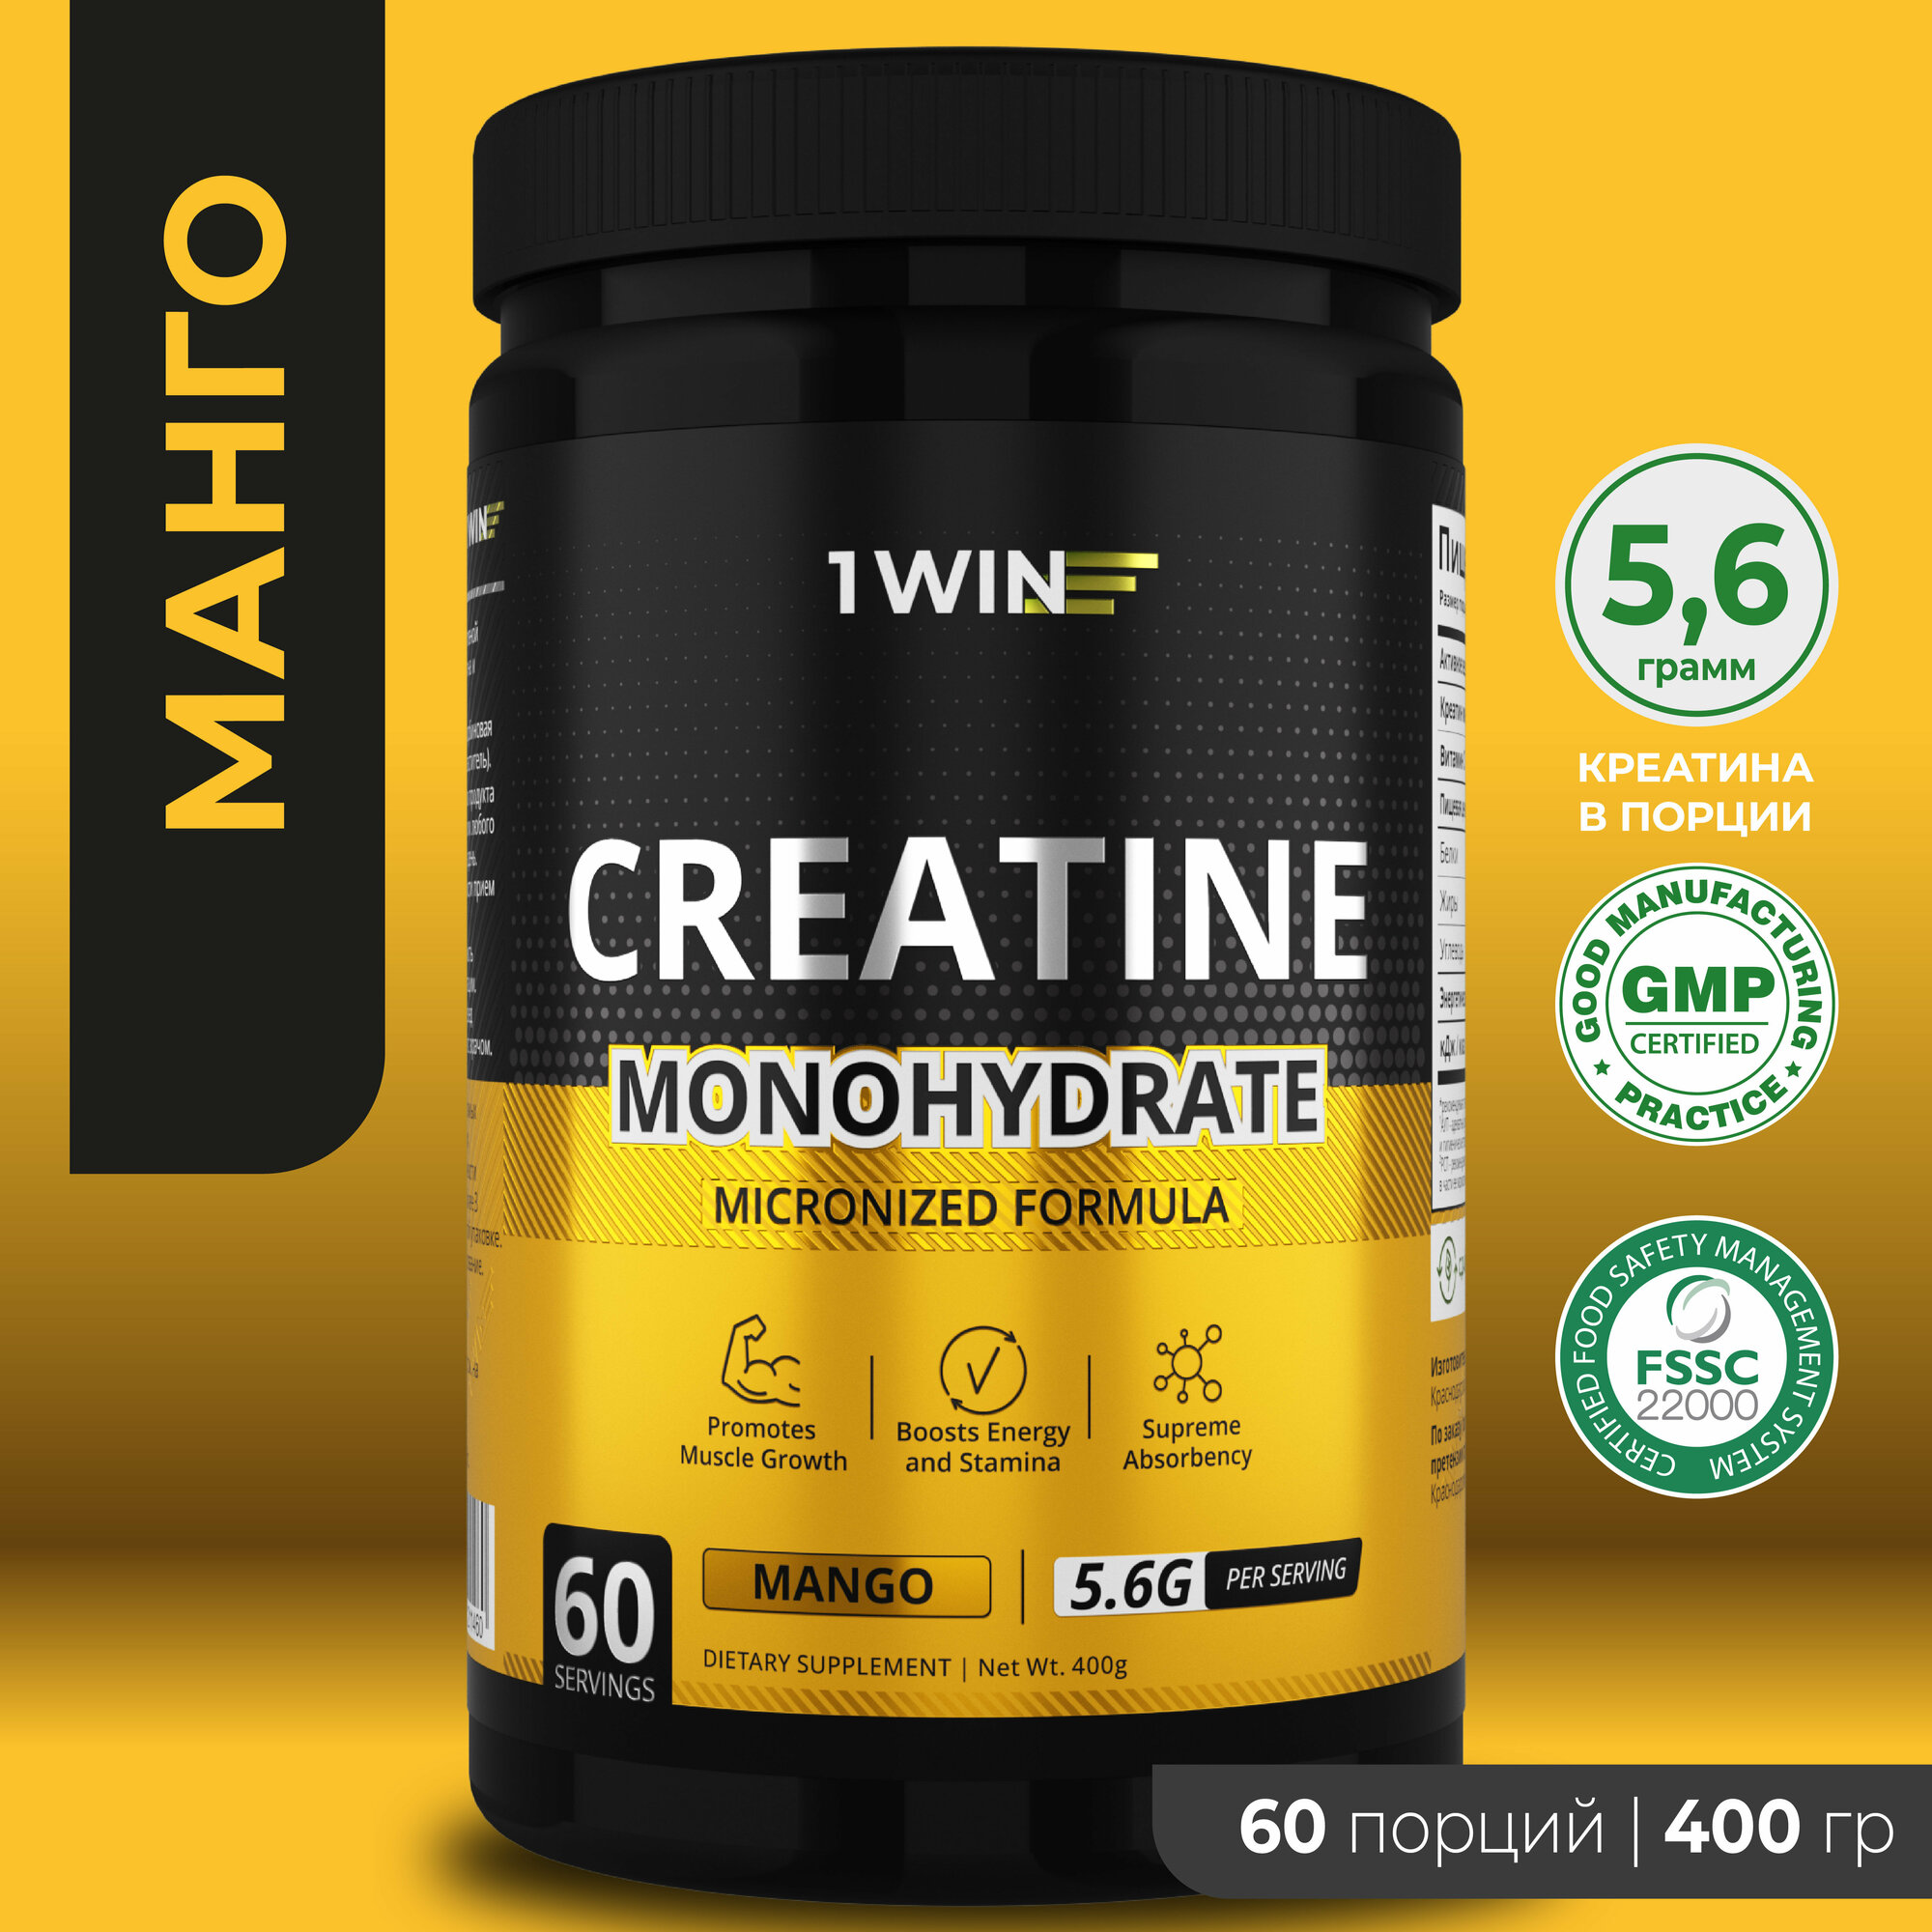 Креатин моногидрат порошок 1WIN Creatine Monohydrate Вкус Манго 60 порций спортивное питание для набора массы тела